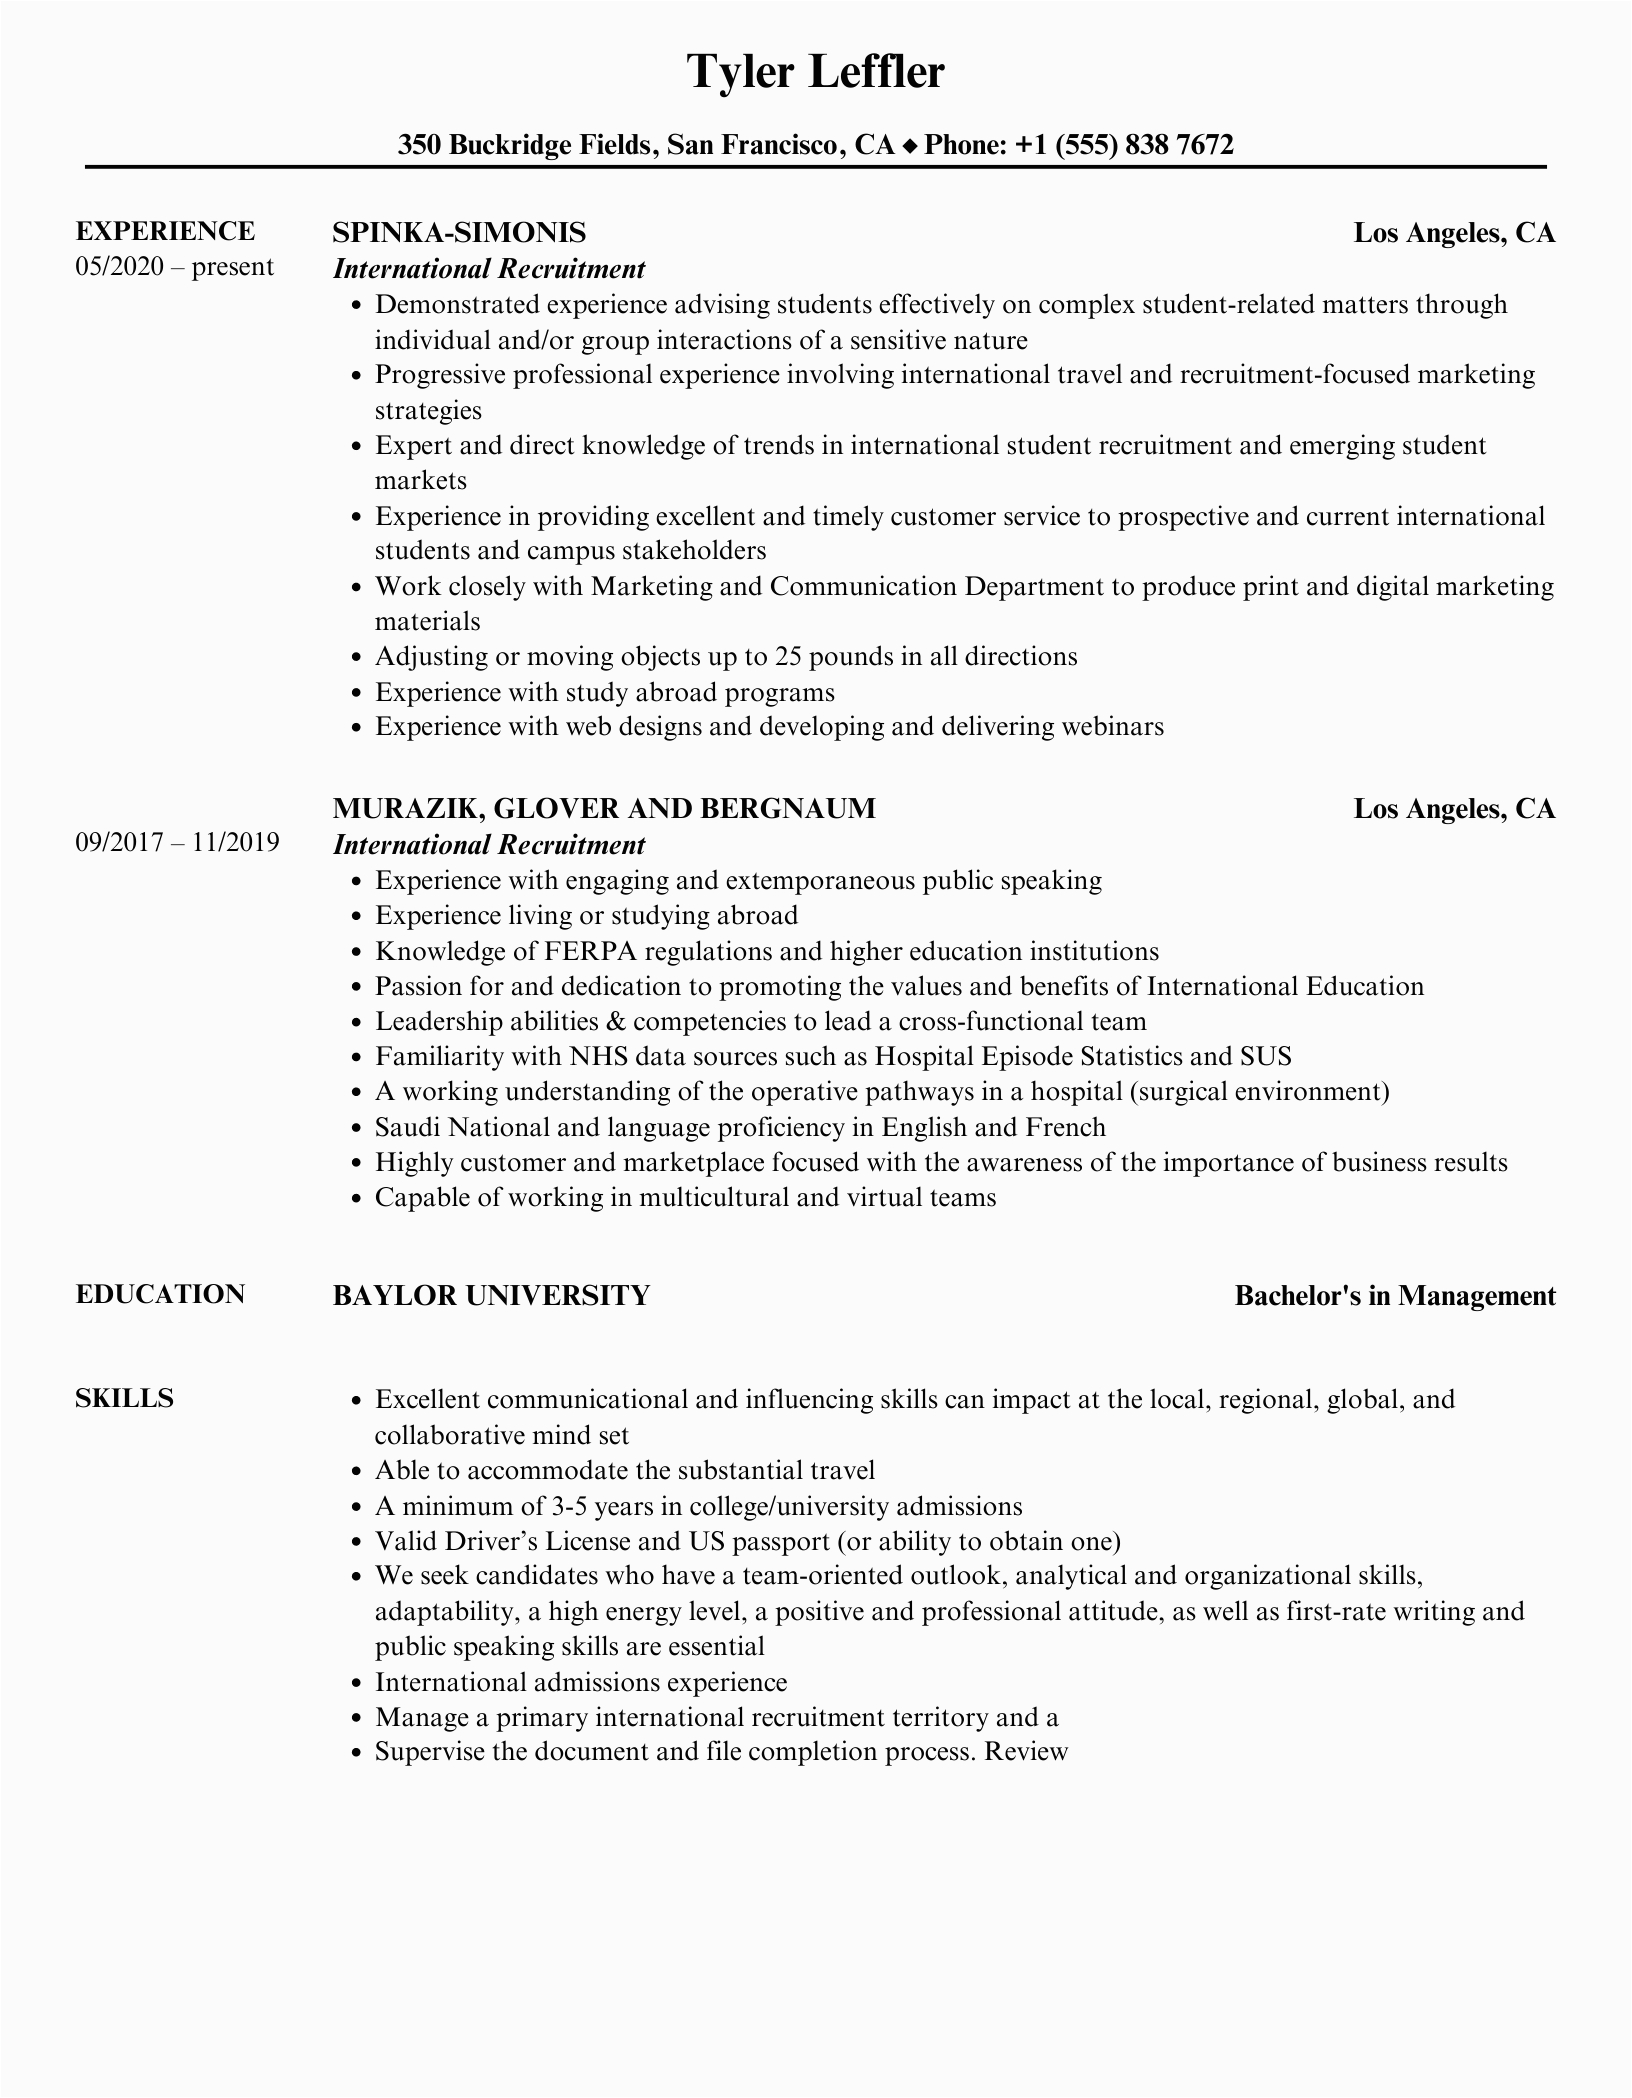 Sample Resume for International Recruiter Position International Recruitment Resume Samples